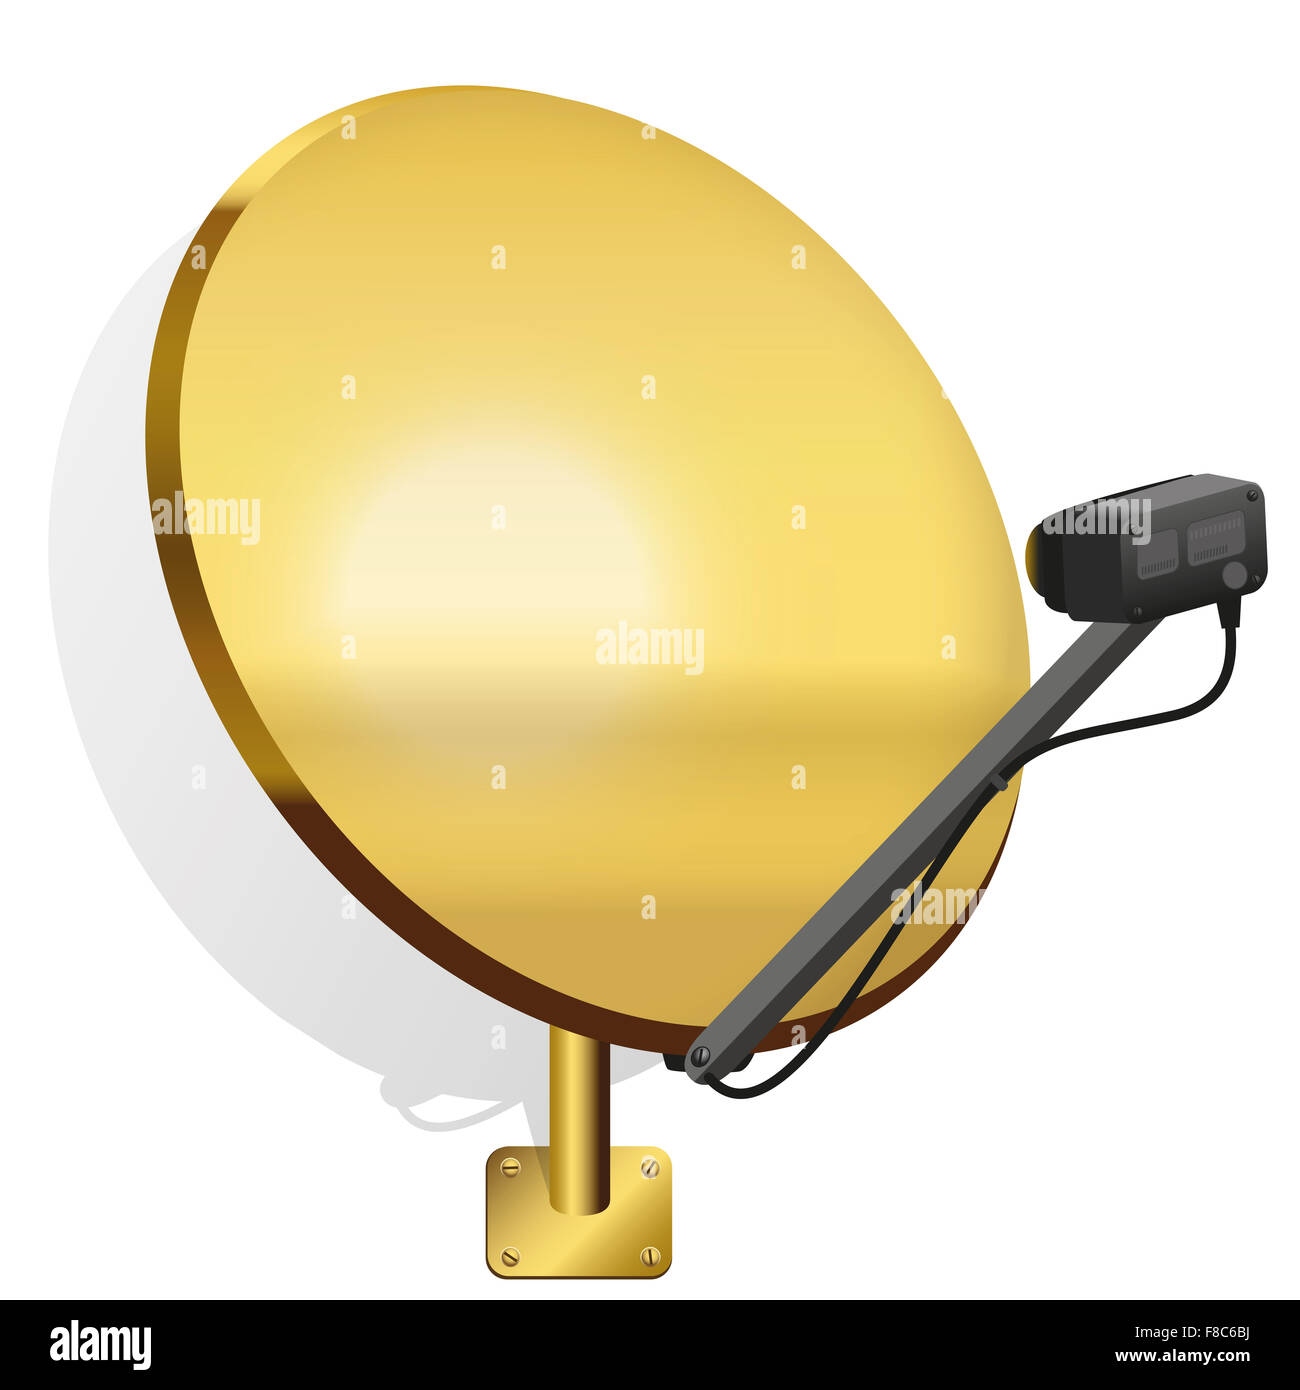 Golden satellite dish pour recevoir des signaux de télévision, radio, internet. Illustration sur fond blanc. Banque D'Images